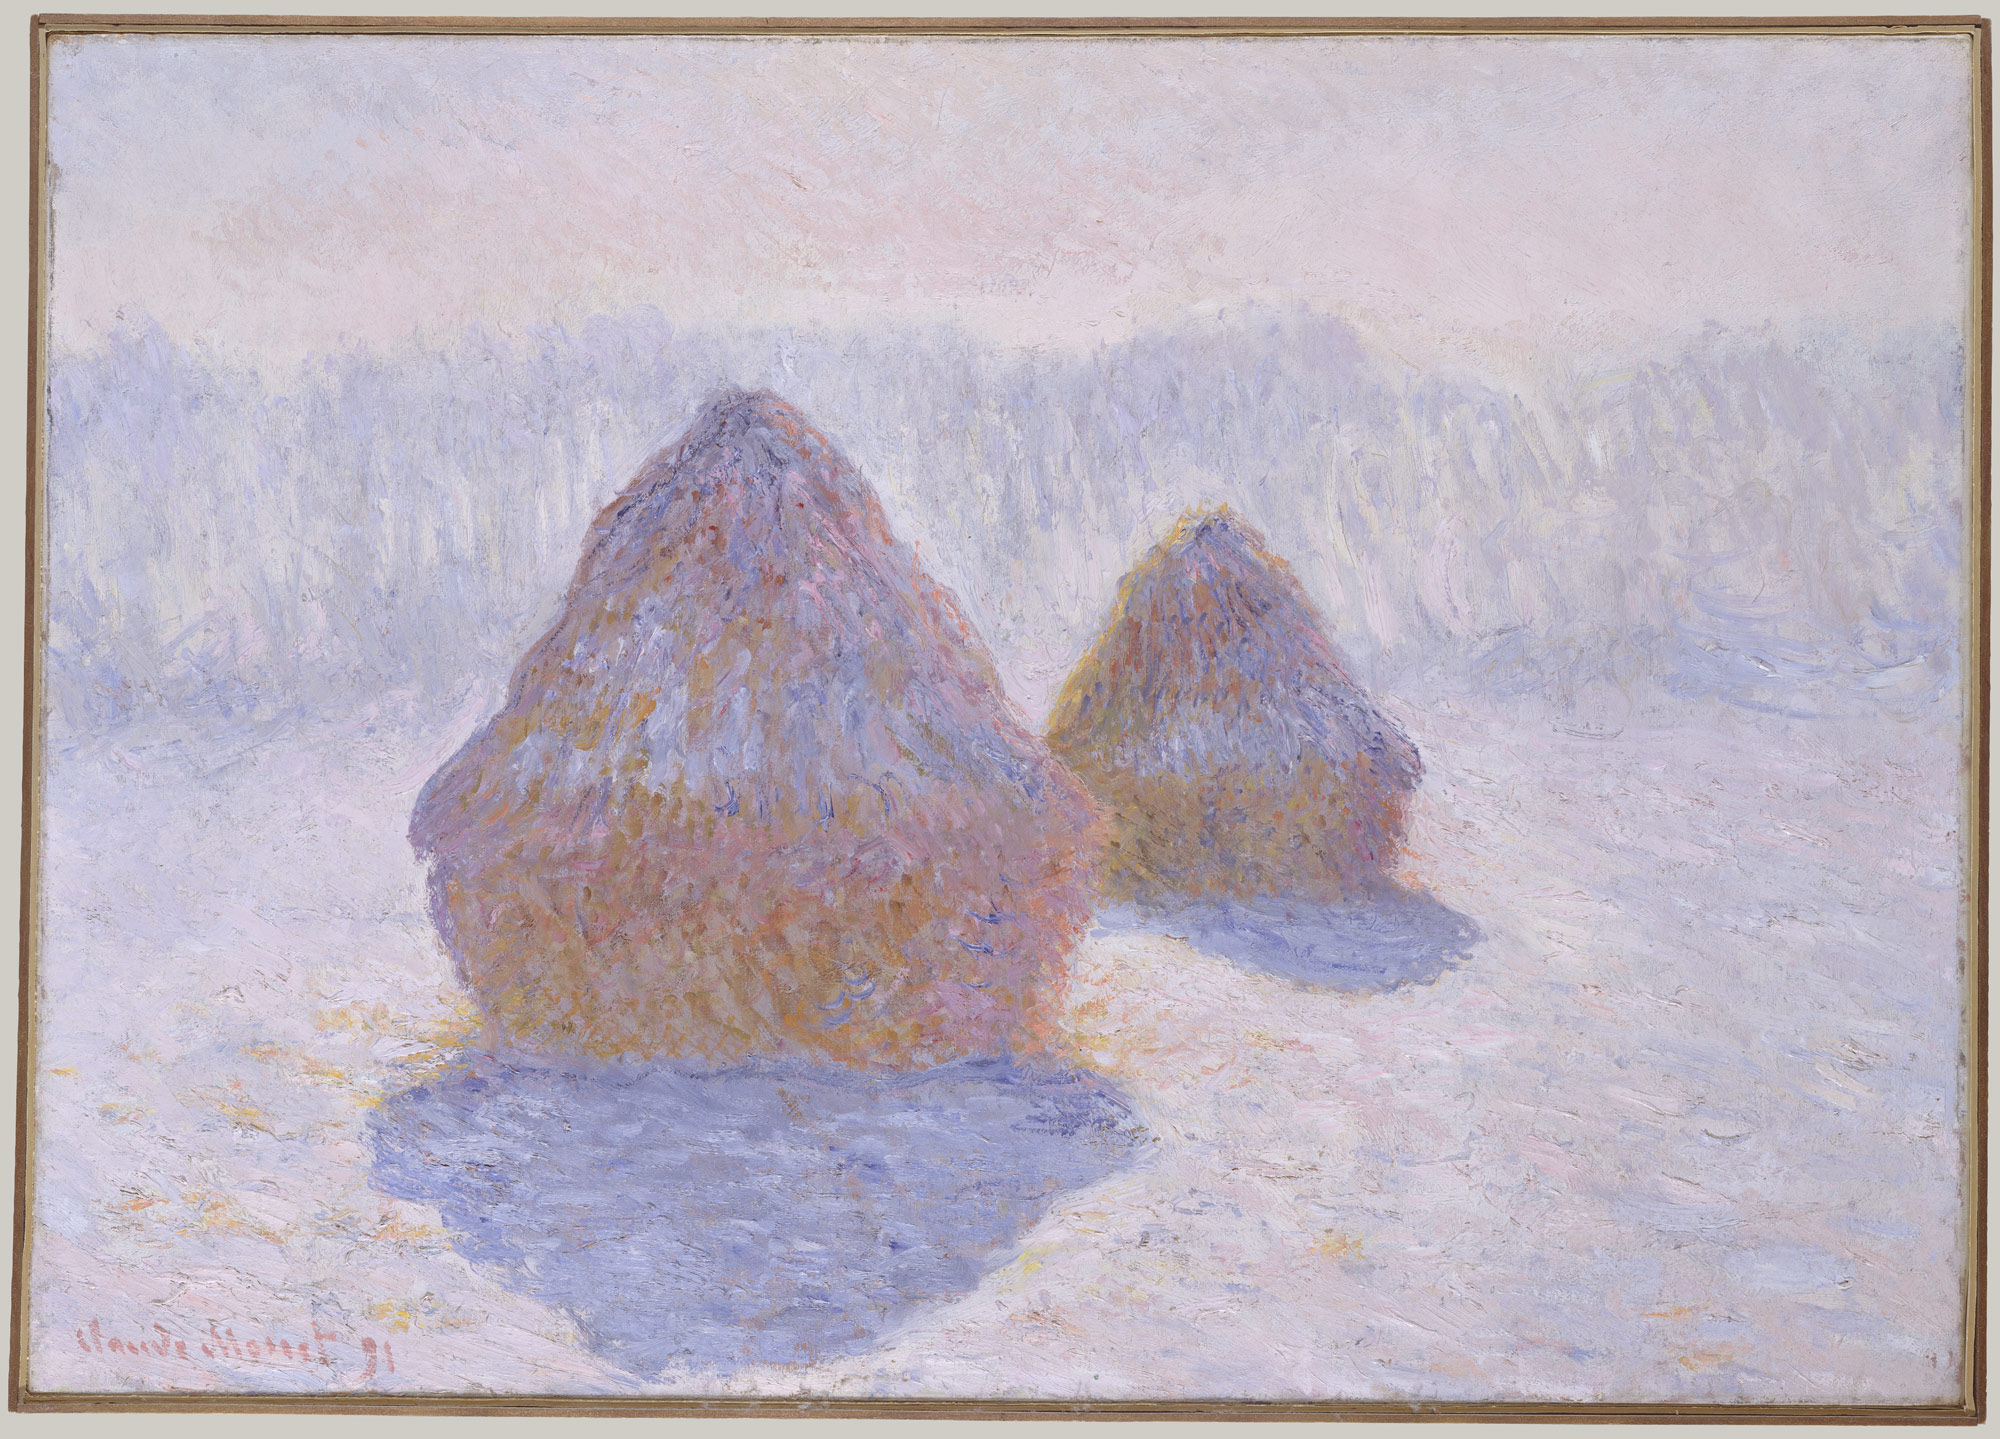 건초더미 (눈과 햇빛의 조화) by Claude Monet - 1891 - 65.4 x 92.1 cm 